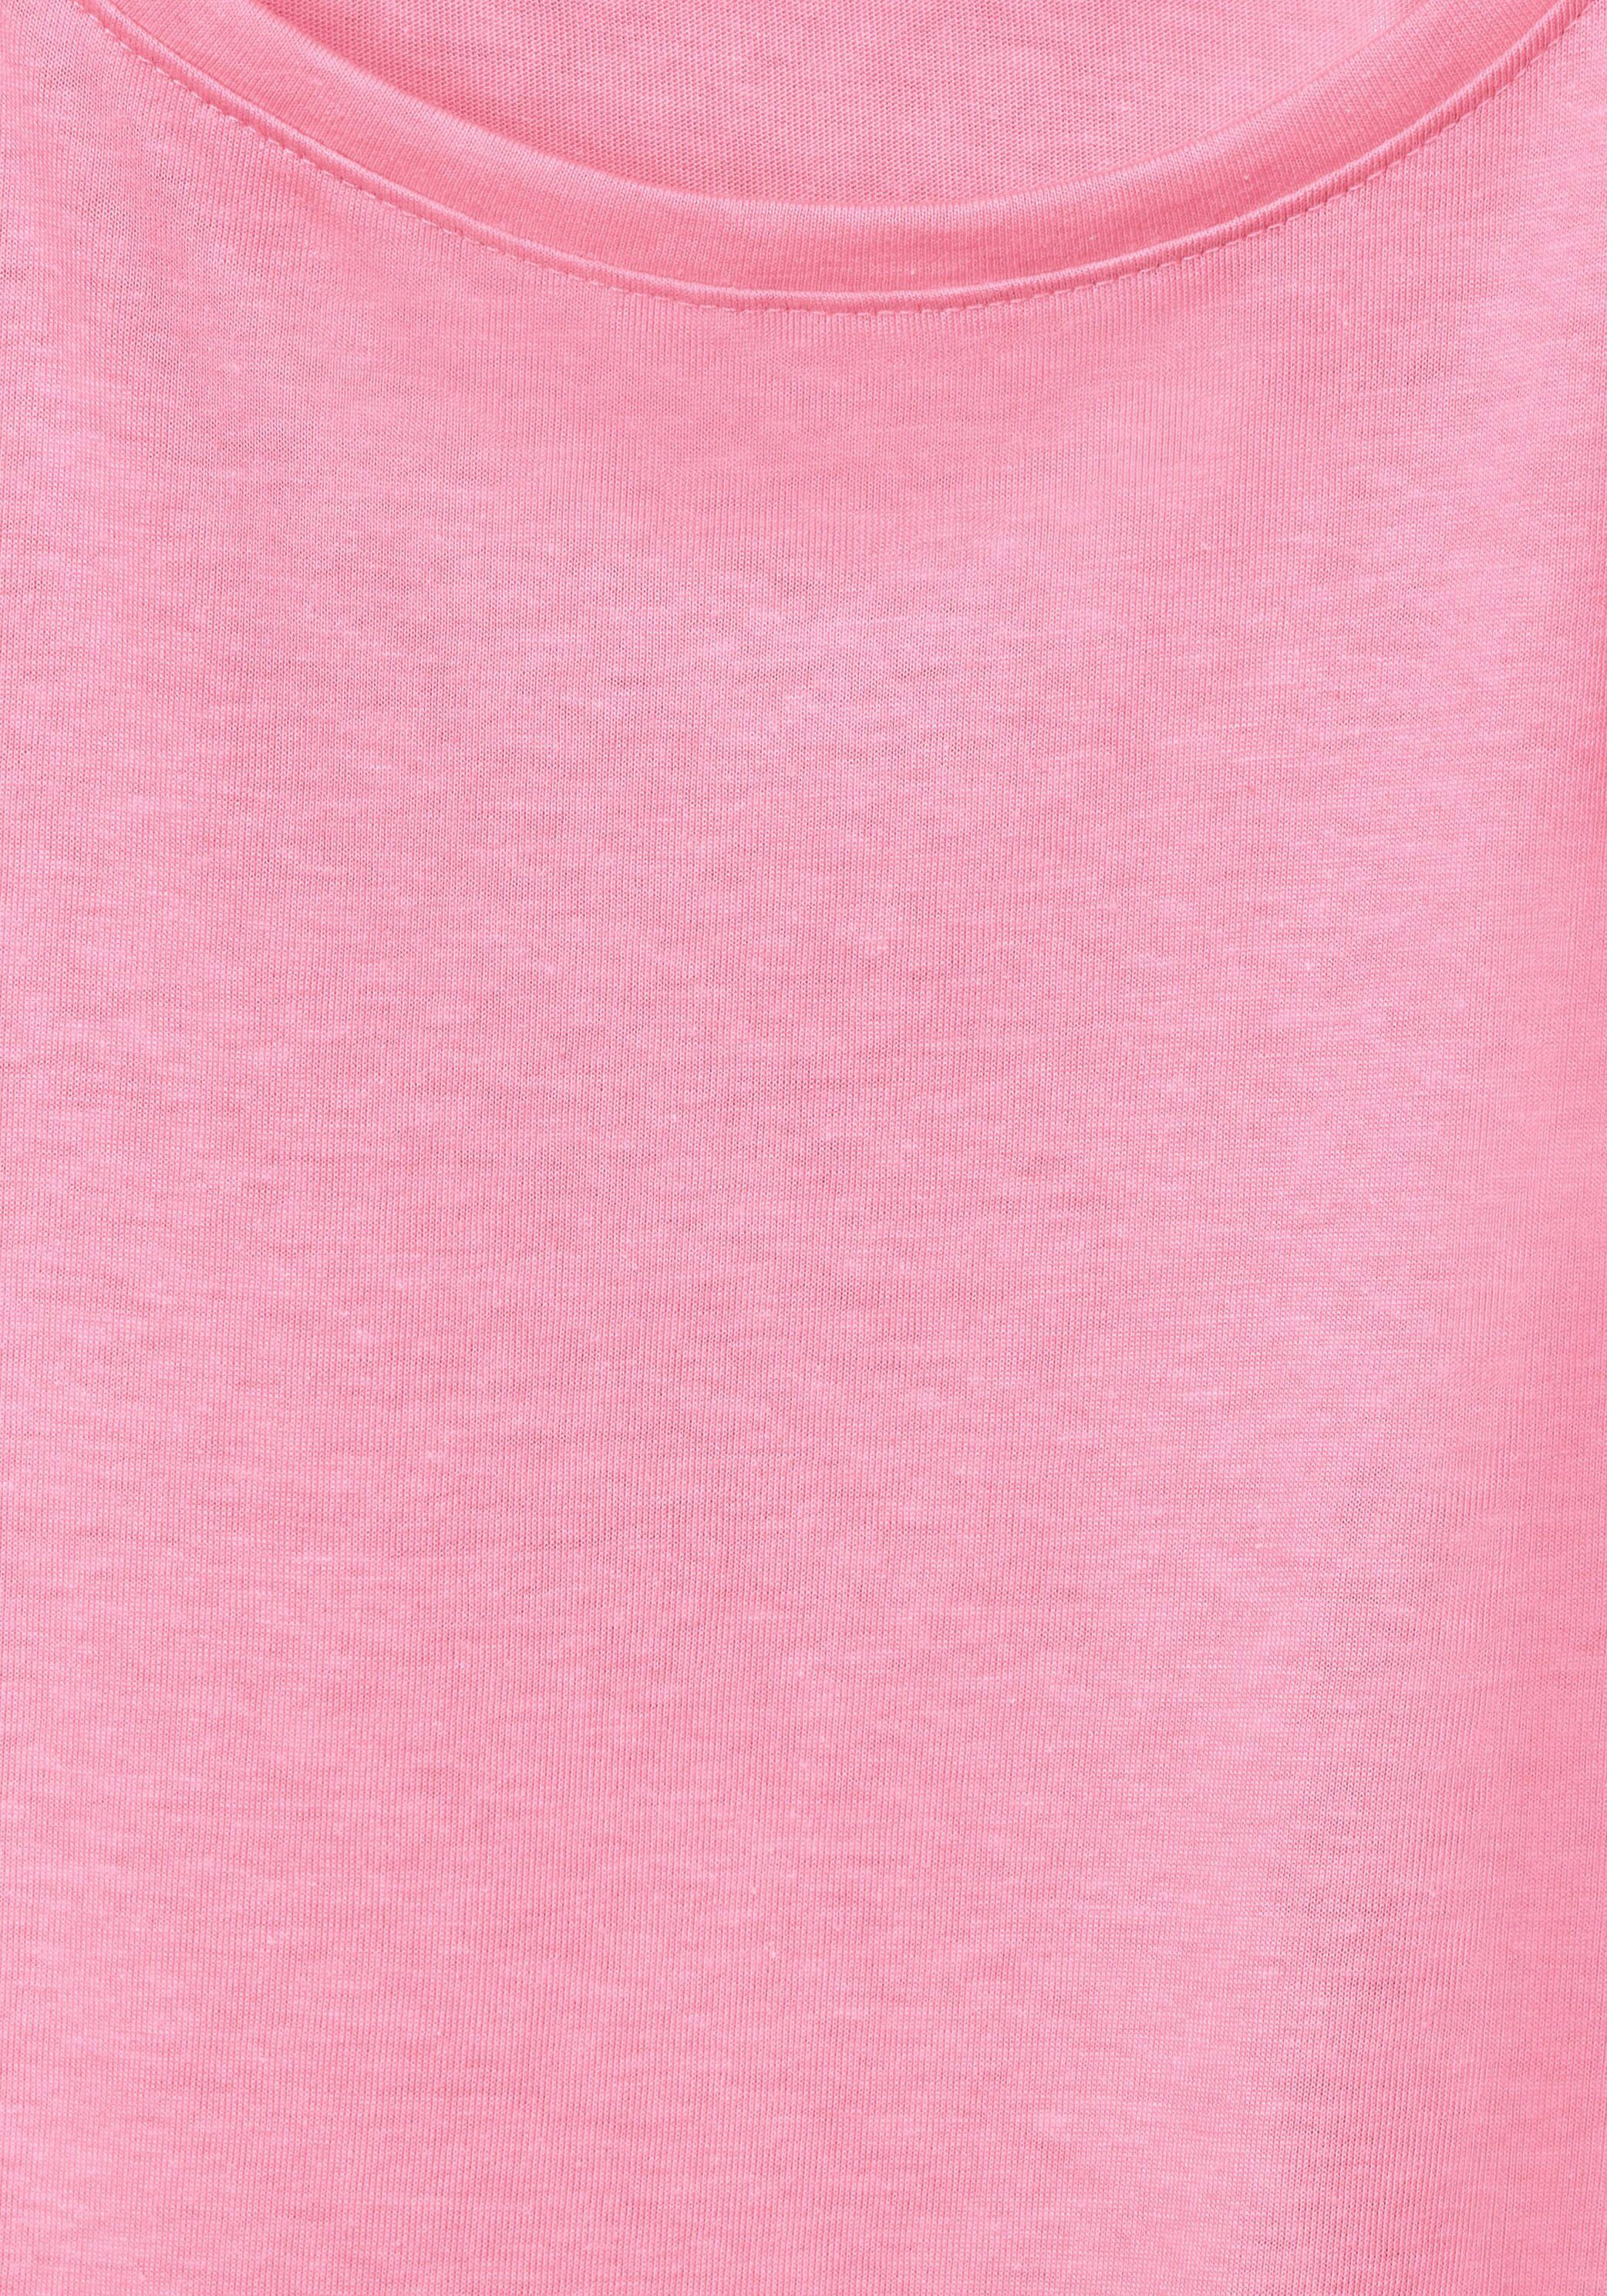 mit soft NOS Cecil Gathering pink T-Shirt Fledermausärmeln S Shoulder